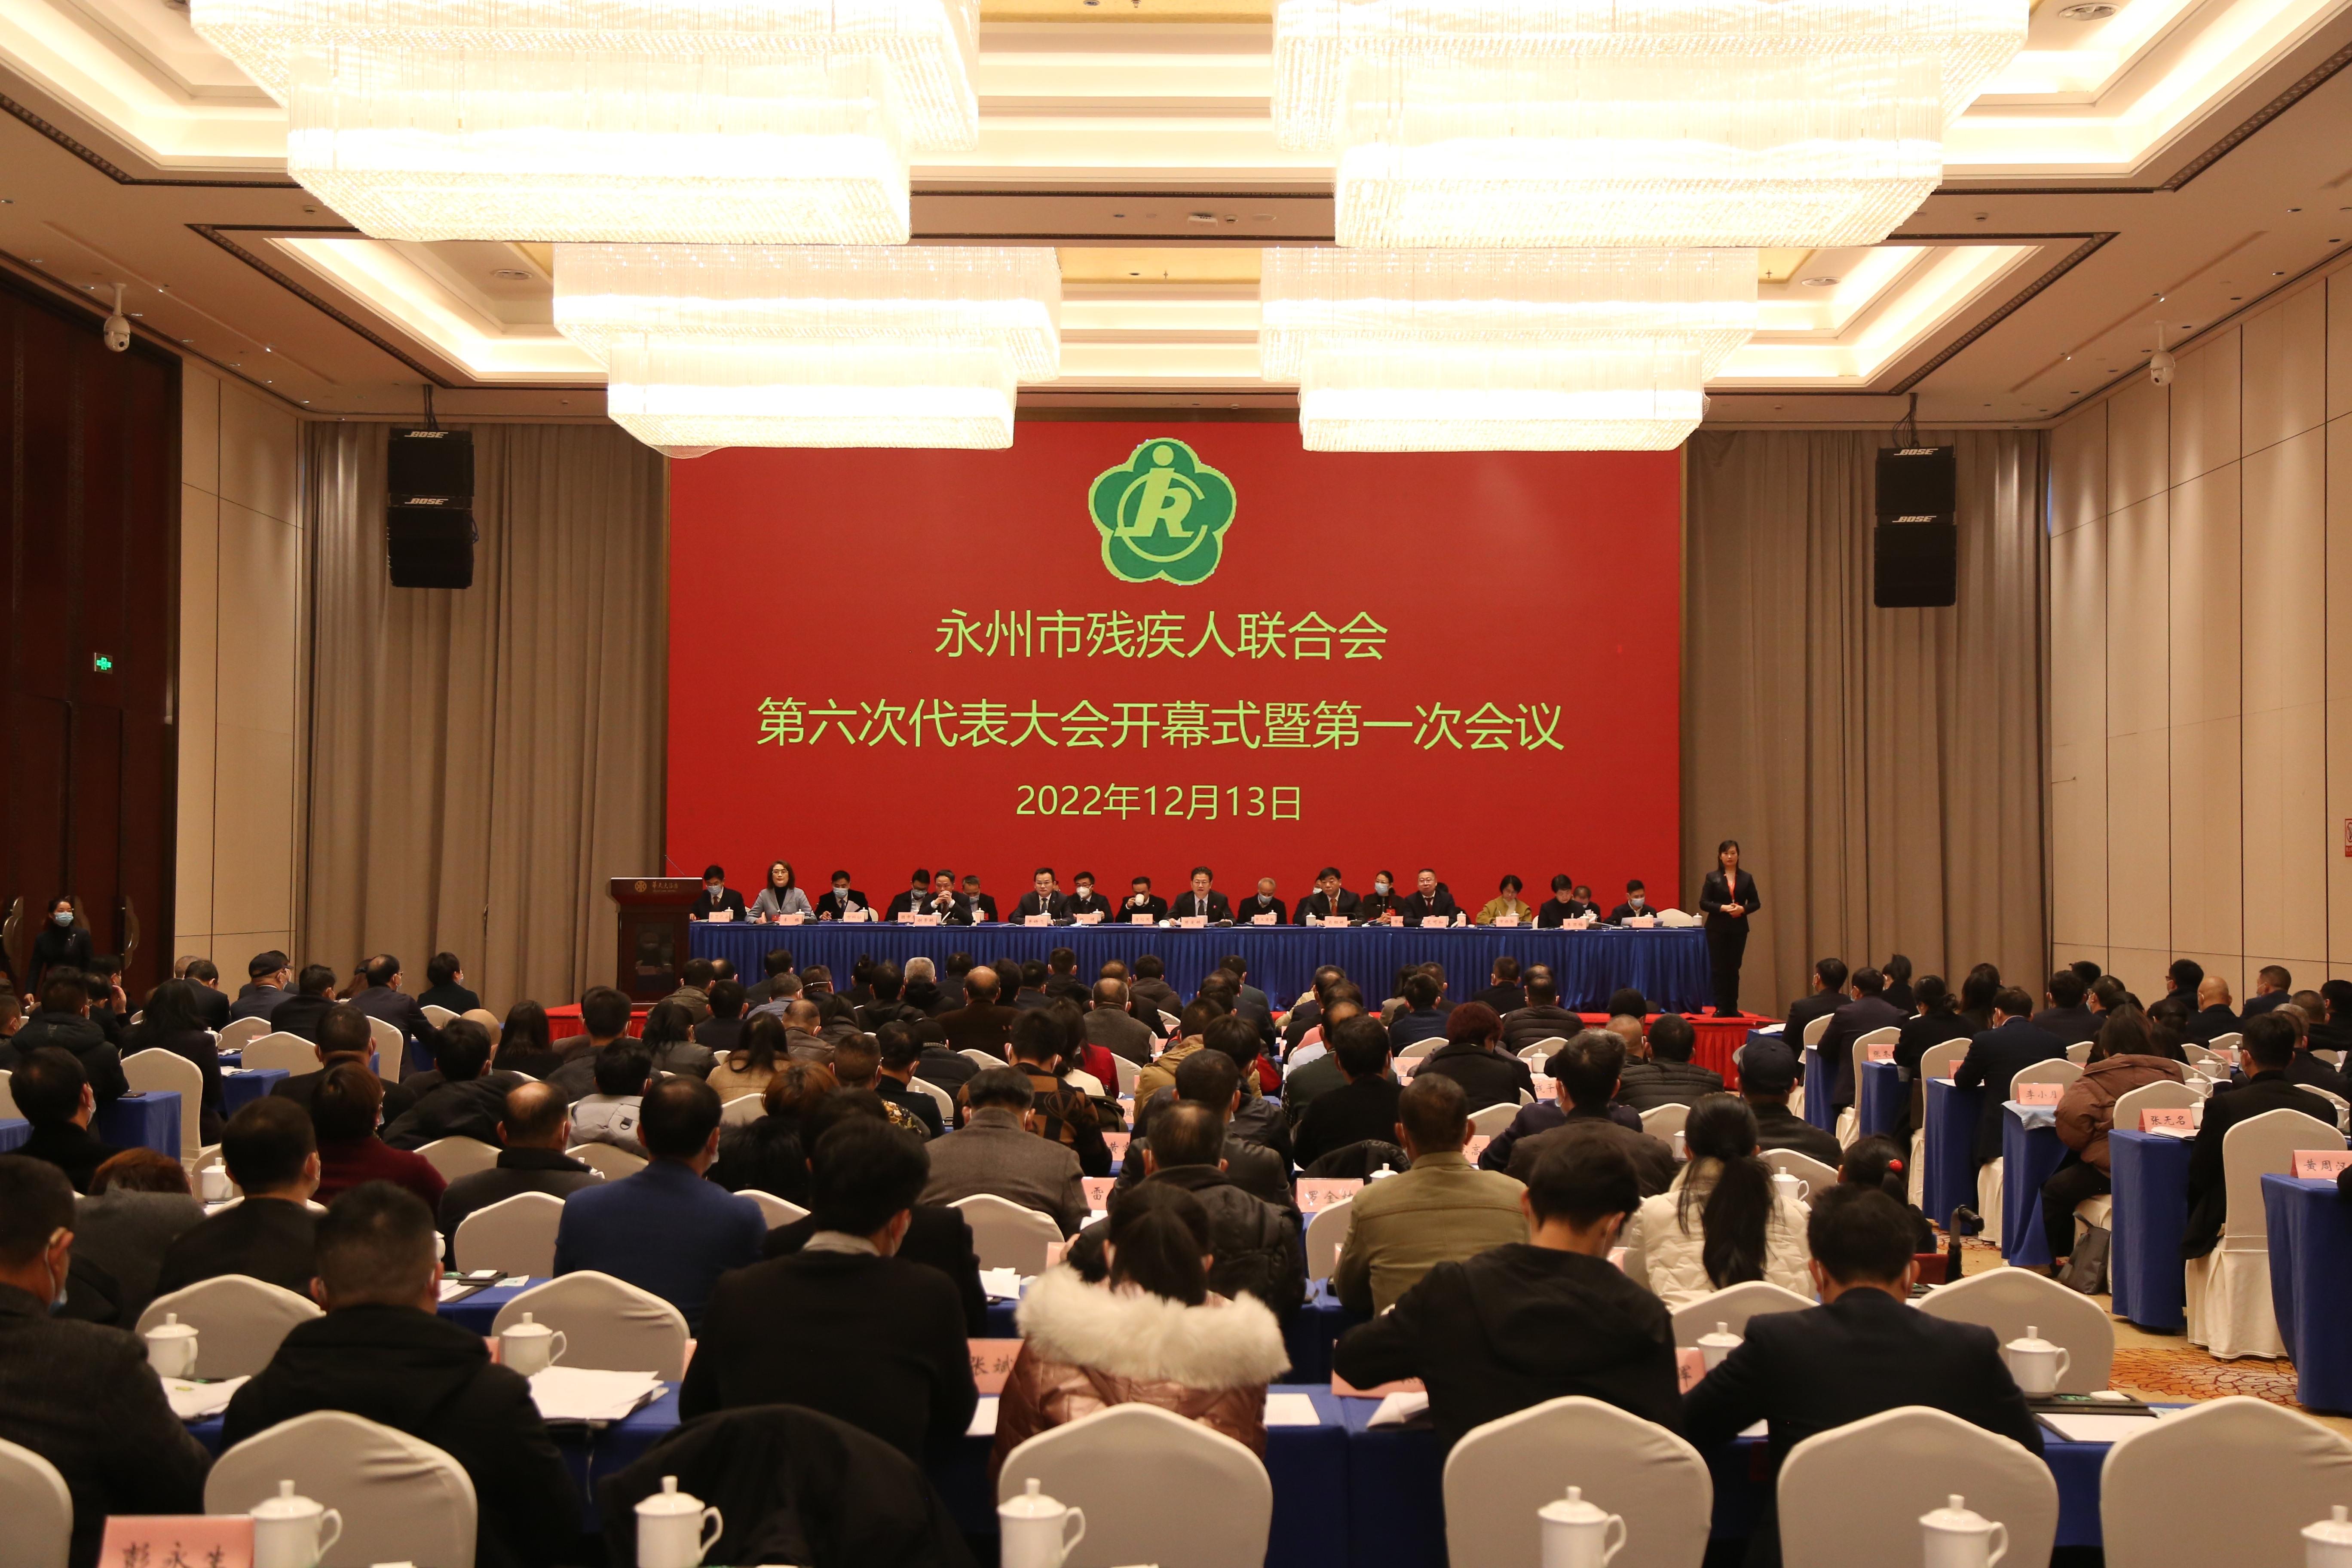 永州市残疾人联合会第六次代表大会开幕 肖红林 陈爱林出席并讲话